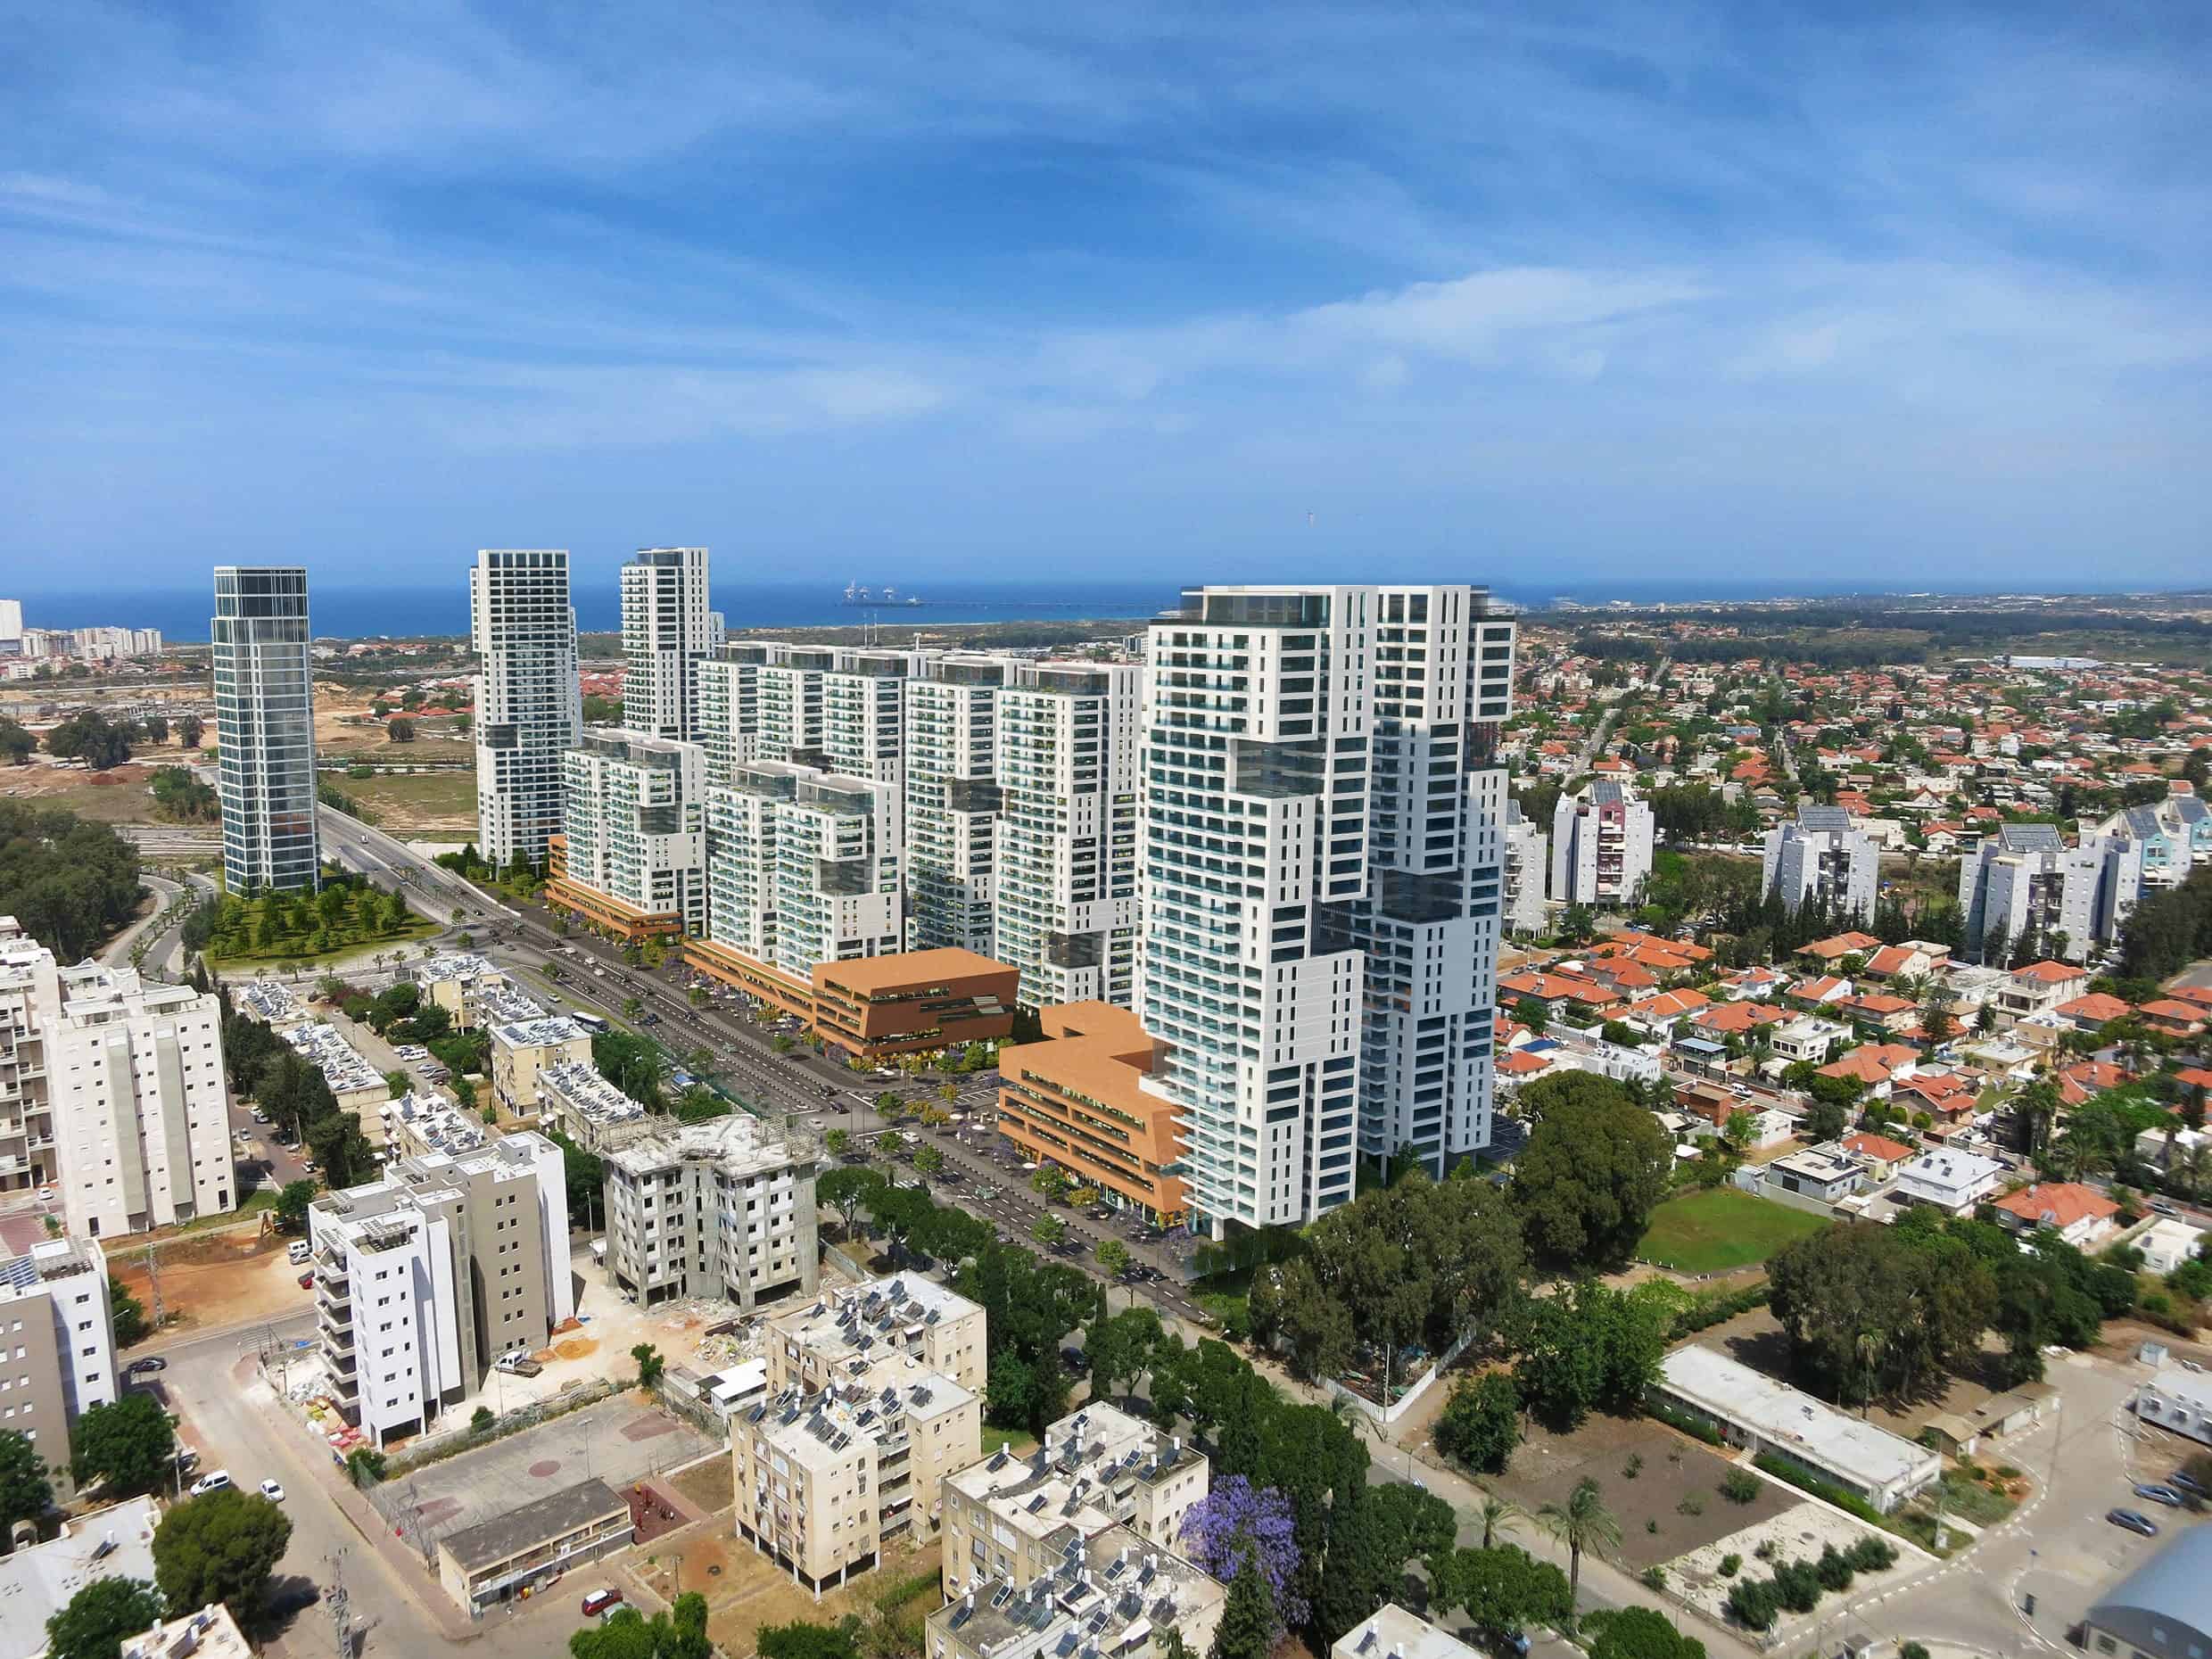 הוועדה המחוזית חיפה אישרה תוכנית להתחדשות עירונית בחדרה